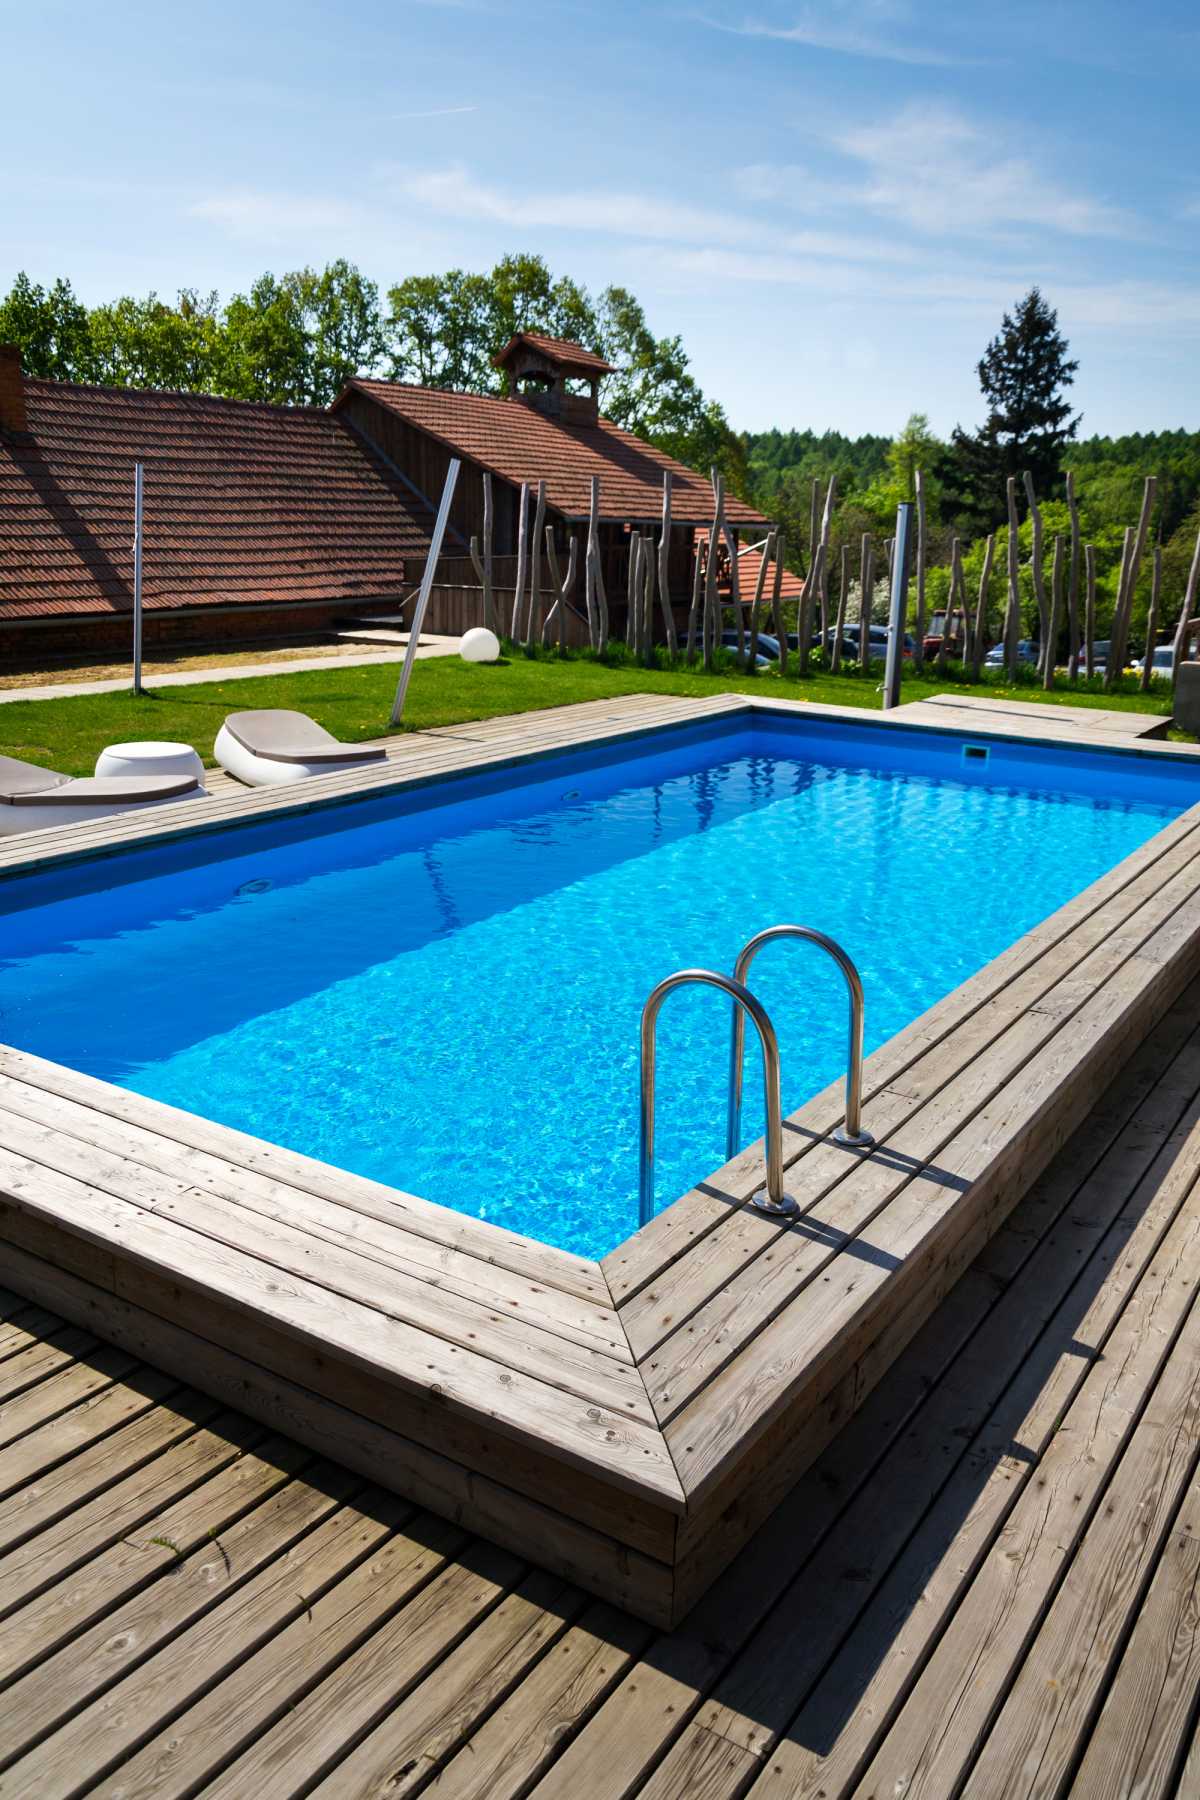 piscina retangular com bordas acima do nível do piso